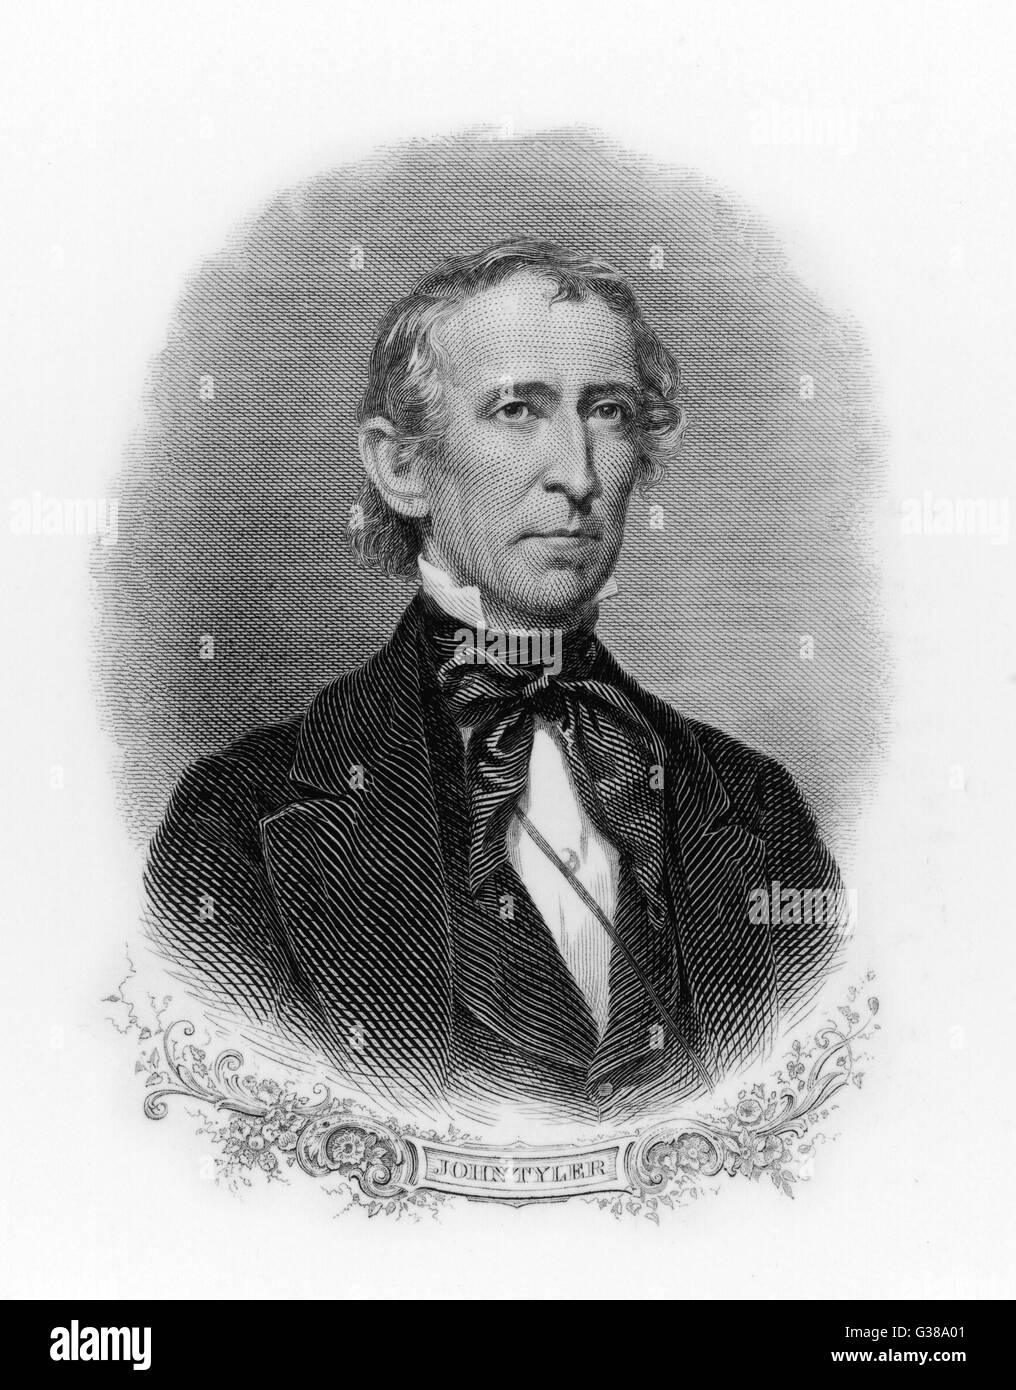 JOHN TYLER  10th American President (1841-45).       Date: 1790 - 1862 Stock Photo